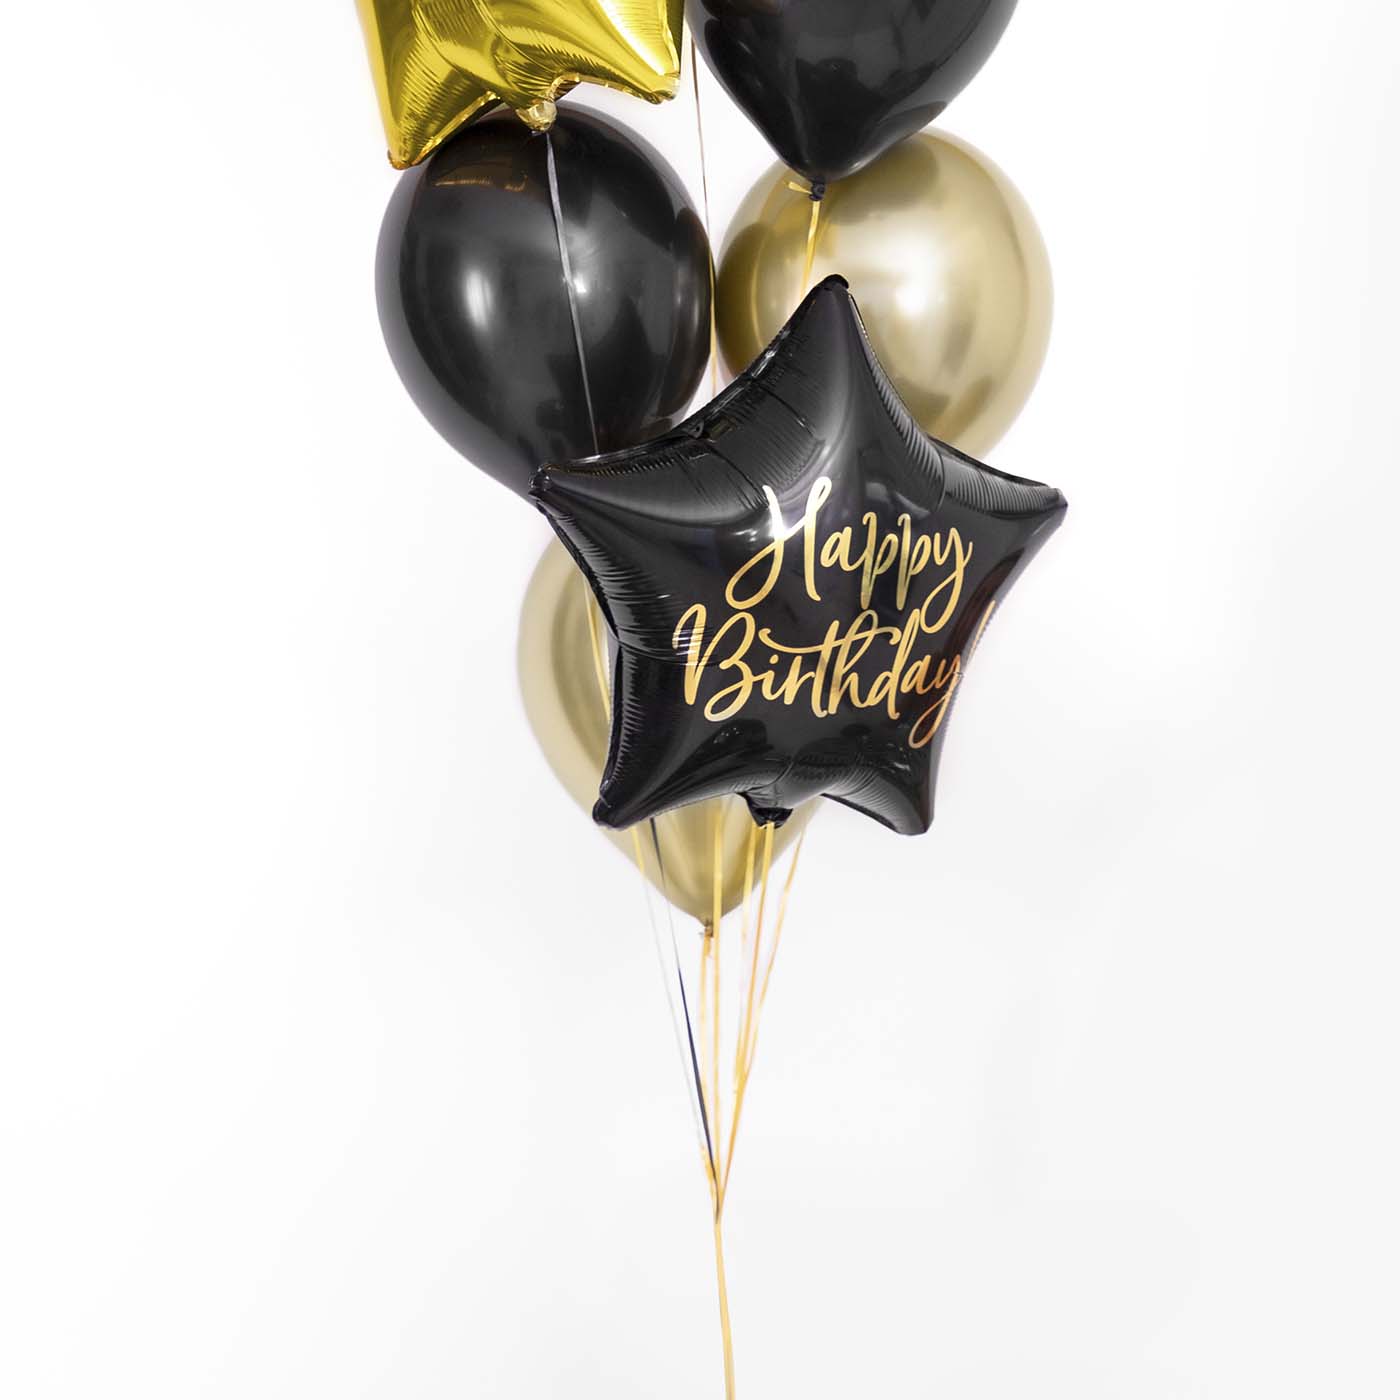 Fail Star Ballon "Alles Gute zum Geburtstag" schwarz